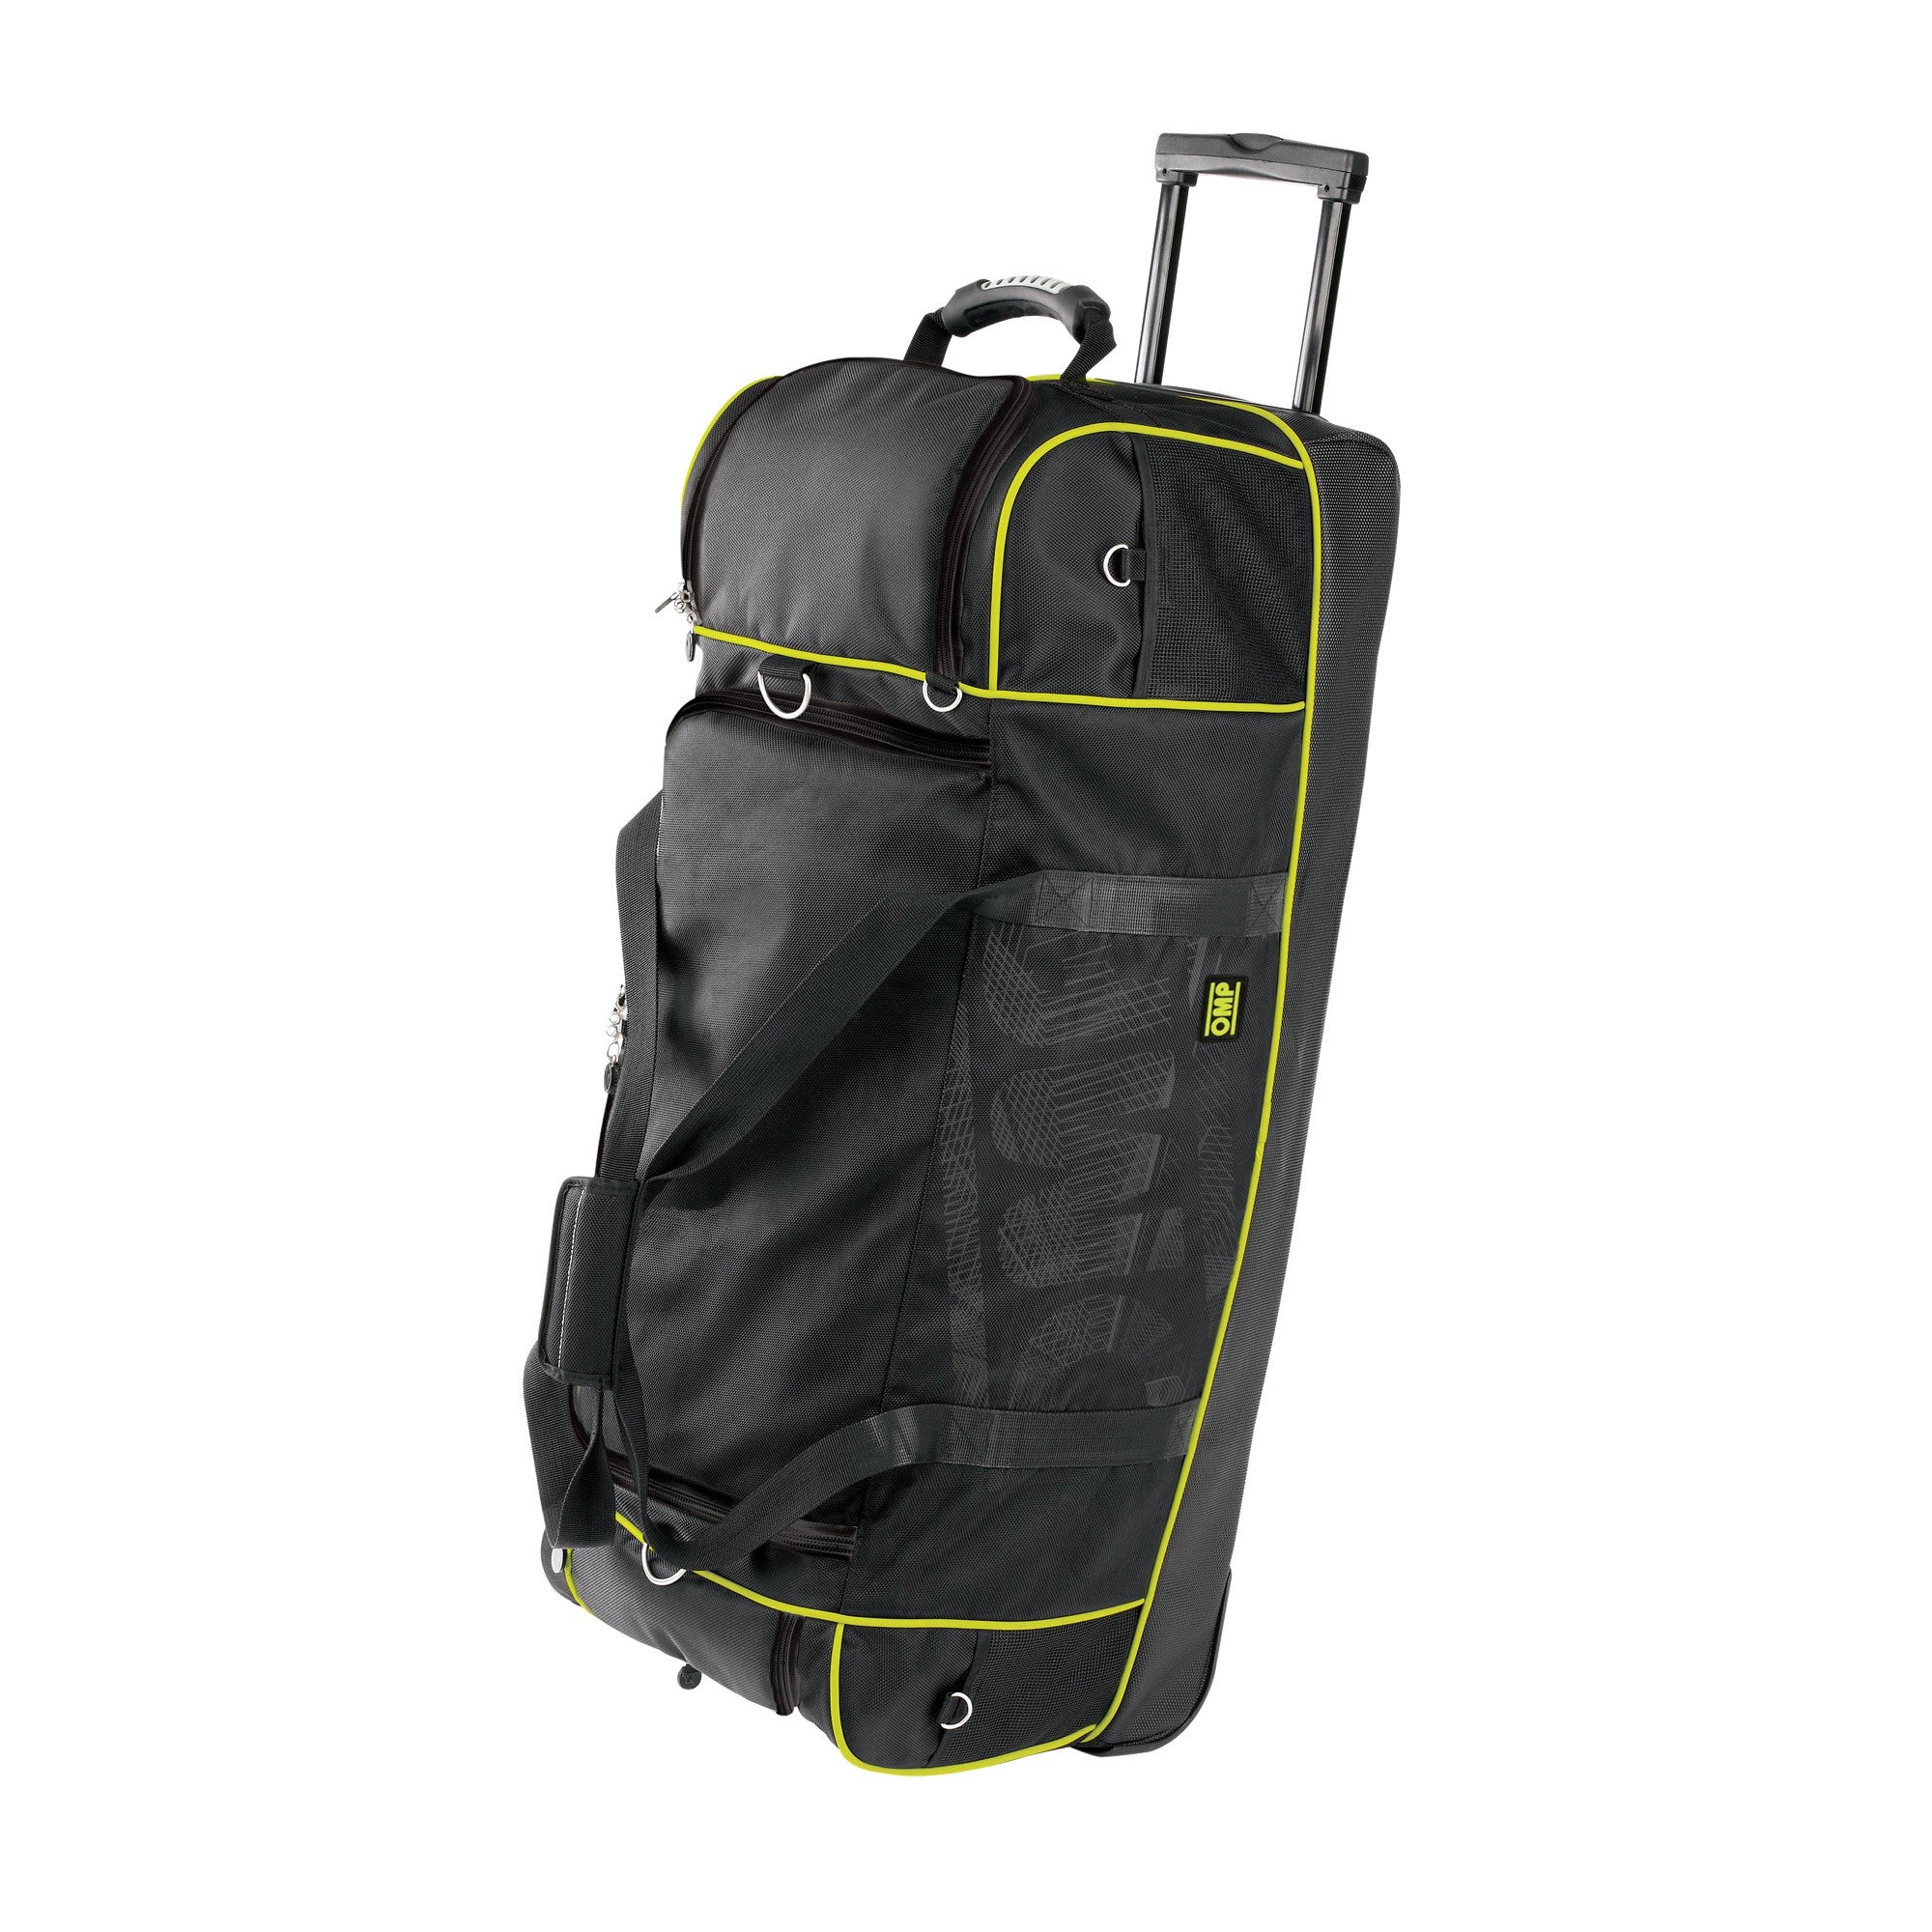 OMP Travel Bag - Saferacer